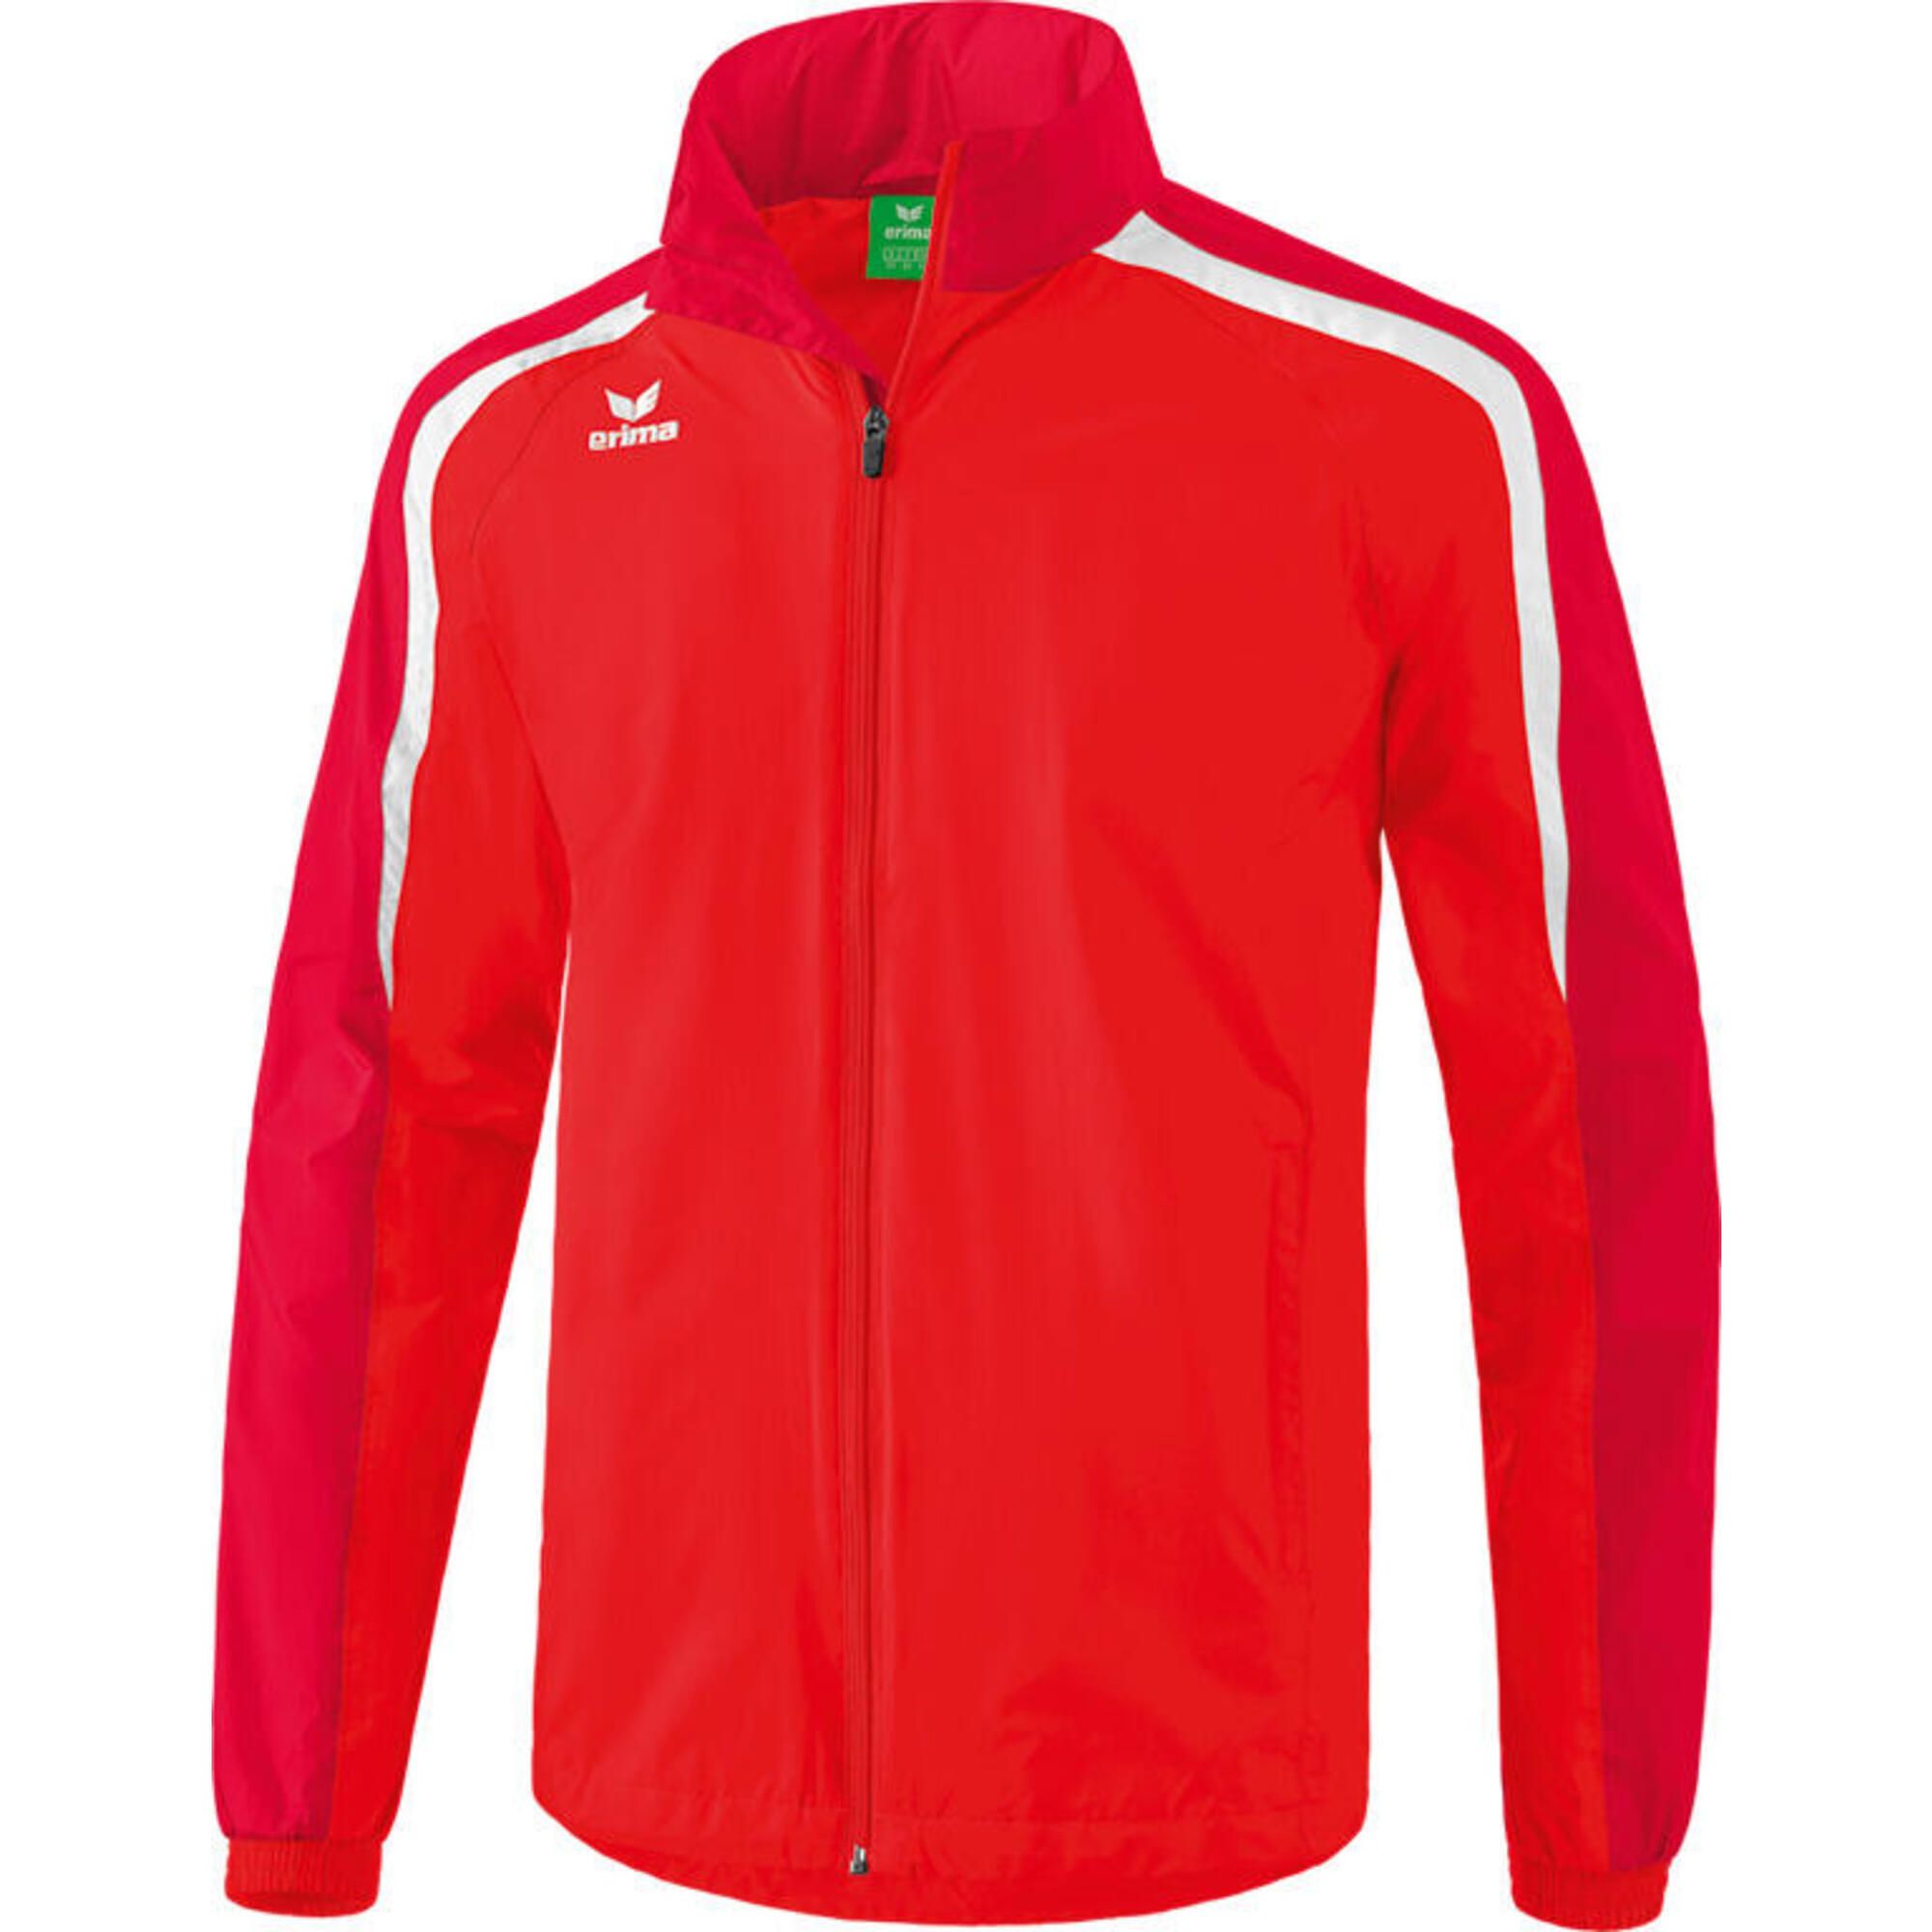 Флашкоре. Erima Classic Team куртка. Erima спортивная одежда чей бренд. Дождевик Erima черно-красный. Nike Performance Allwetterjacke Damen - Training Jacket.